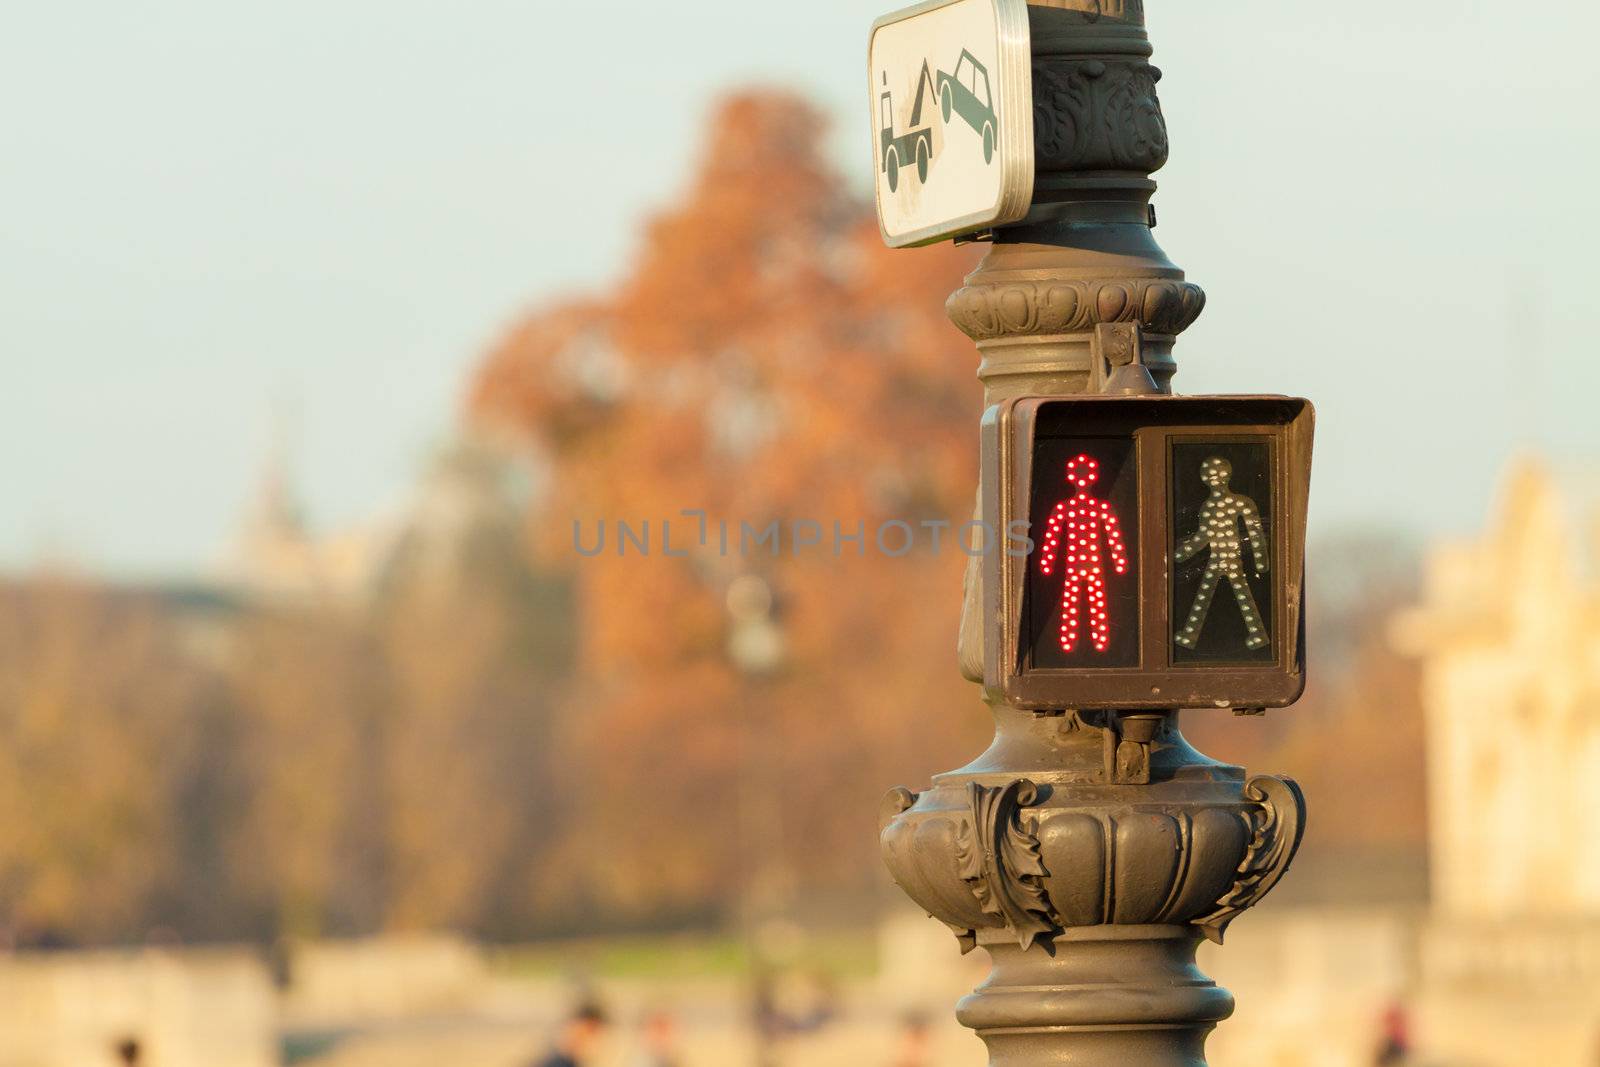 Red pedestrian traffic light in Paris by Lamarinx